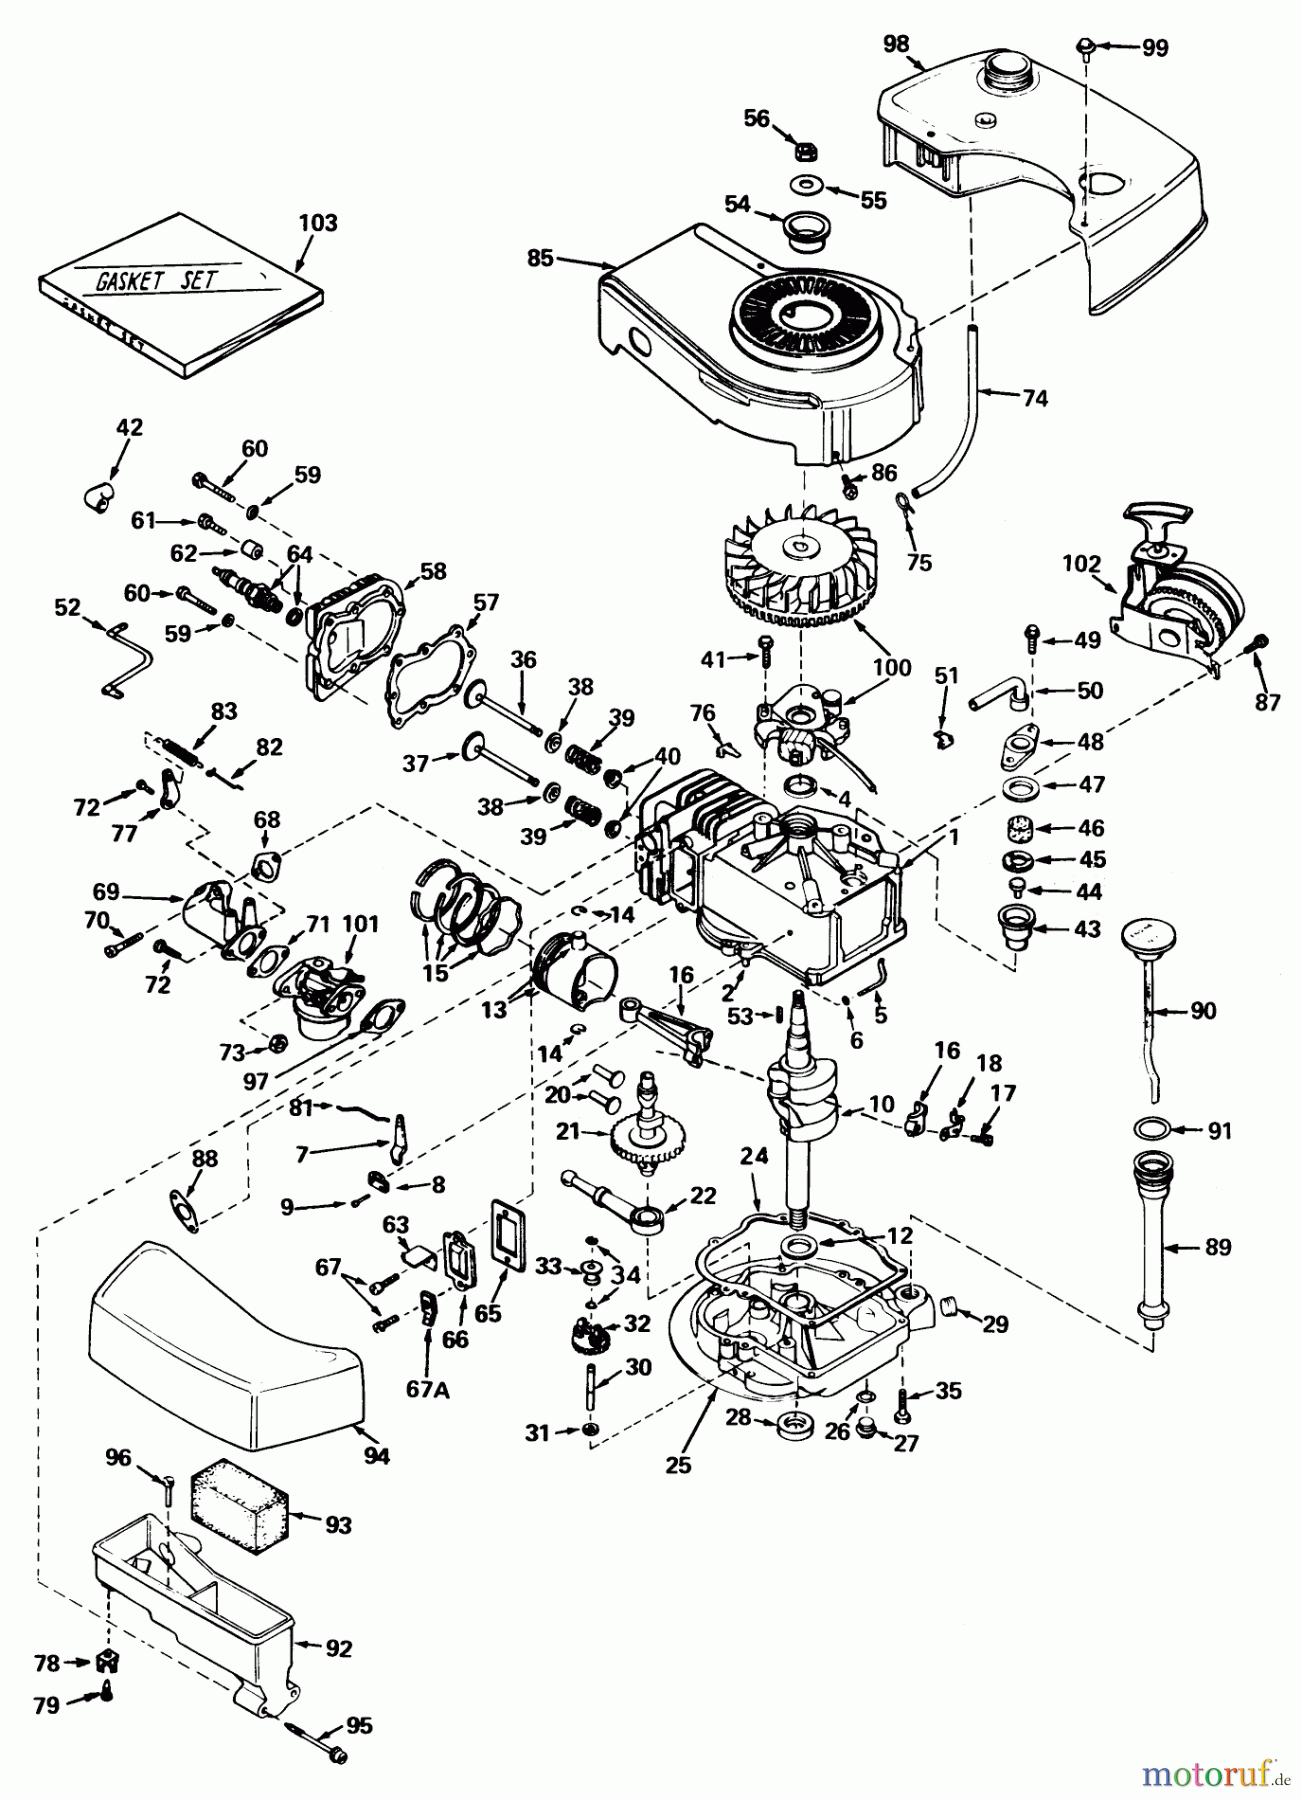  Toro Neu Mowers, Walk-Behind Seite 1 20660 - Toro Lawnmower, 1974 (4000001-4999999) ENGINE TECUMSEH MODEL NO. TNT 120-12002 (MOWER MODEL NOS. 20440 AND 20550)